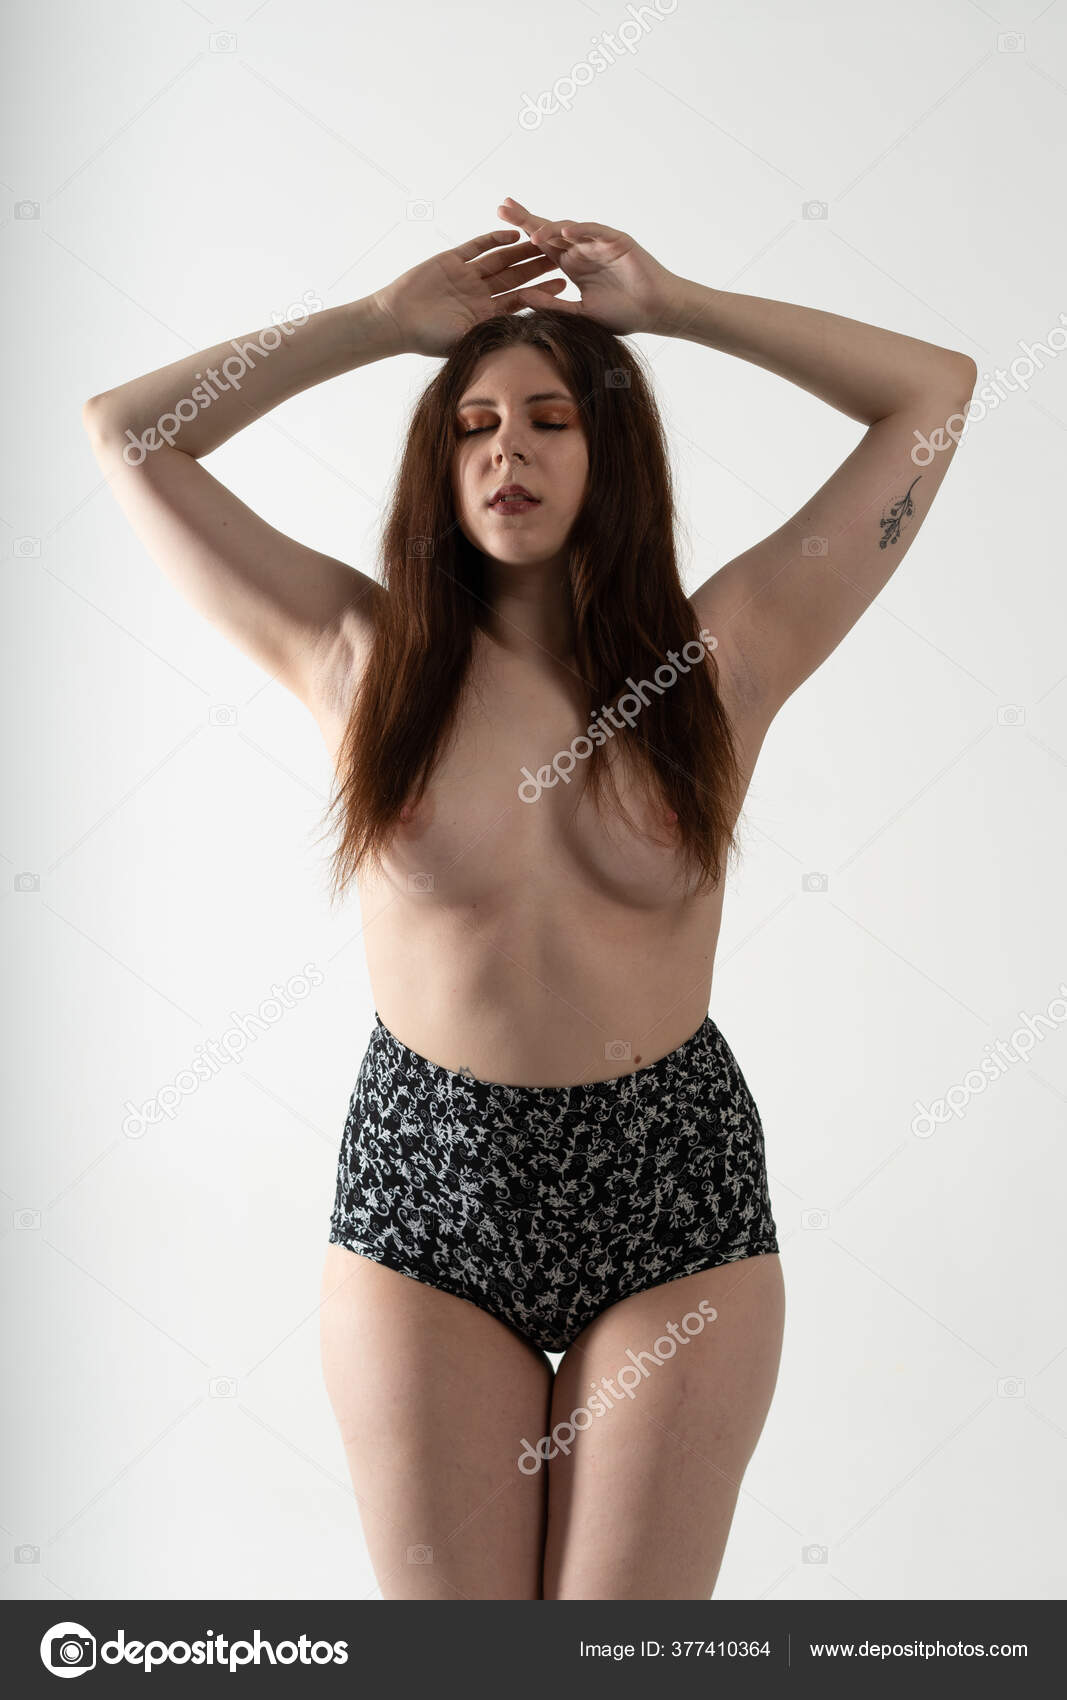 https://st3n.depositphotos.com/10086424/37741/i/1600/depositphotos_377410364-stock-photo-young-beautiful-girl-posing-nude.jpg